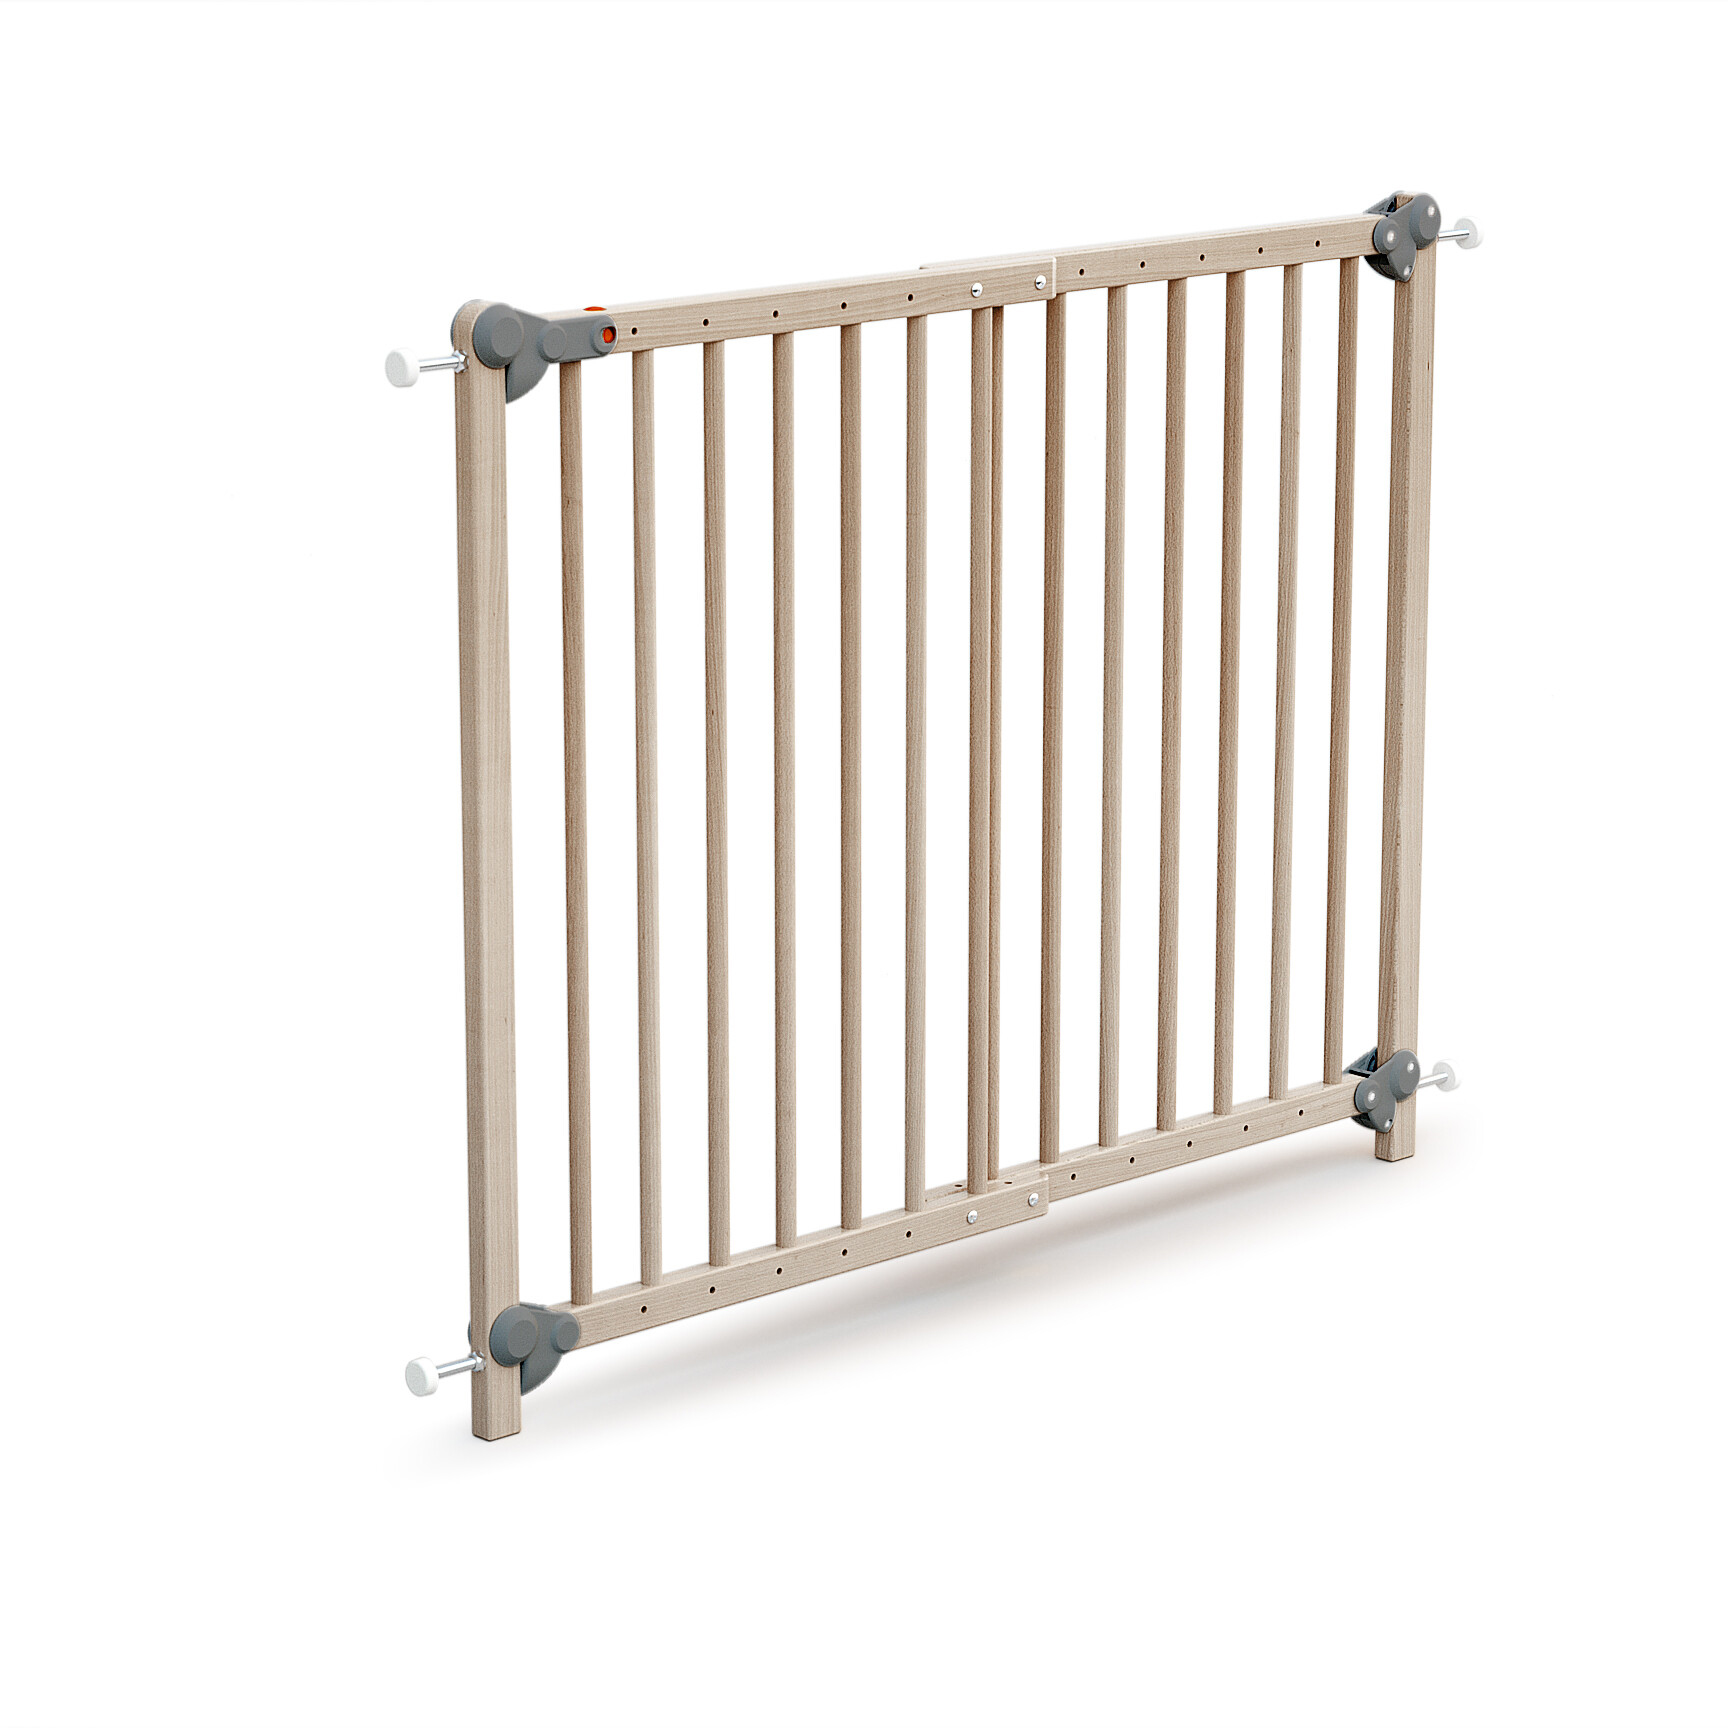 barriere bois extensible 30 à 150 cm - Achat/Vente securite